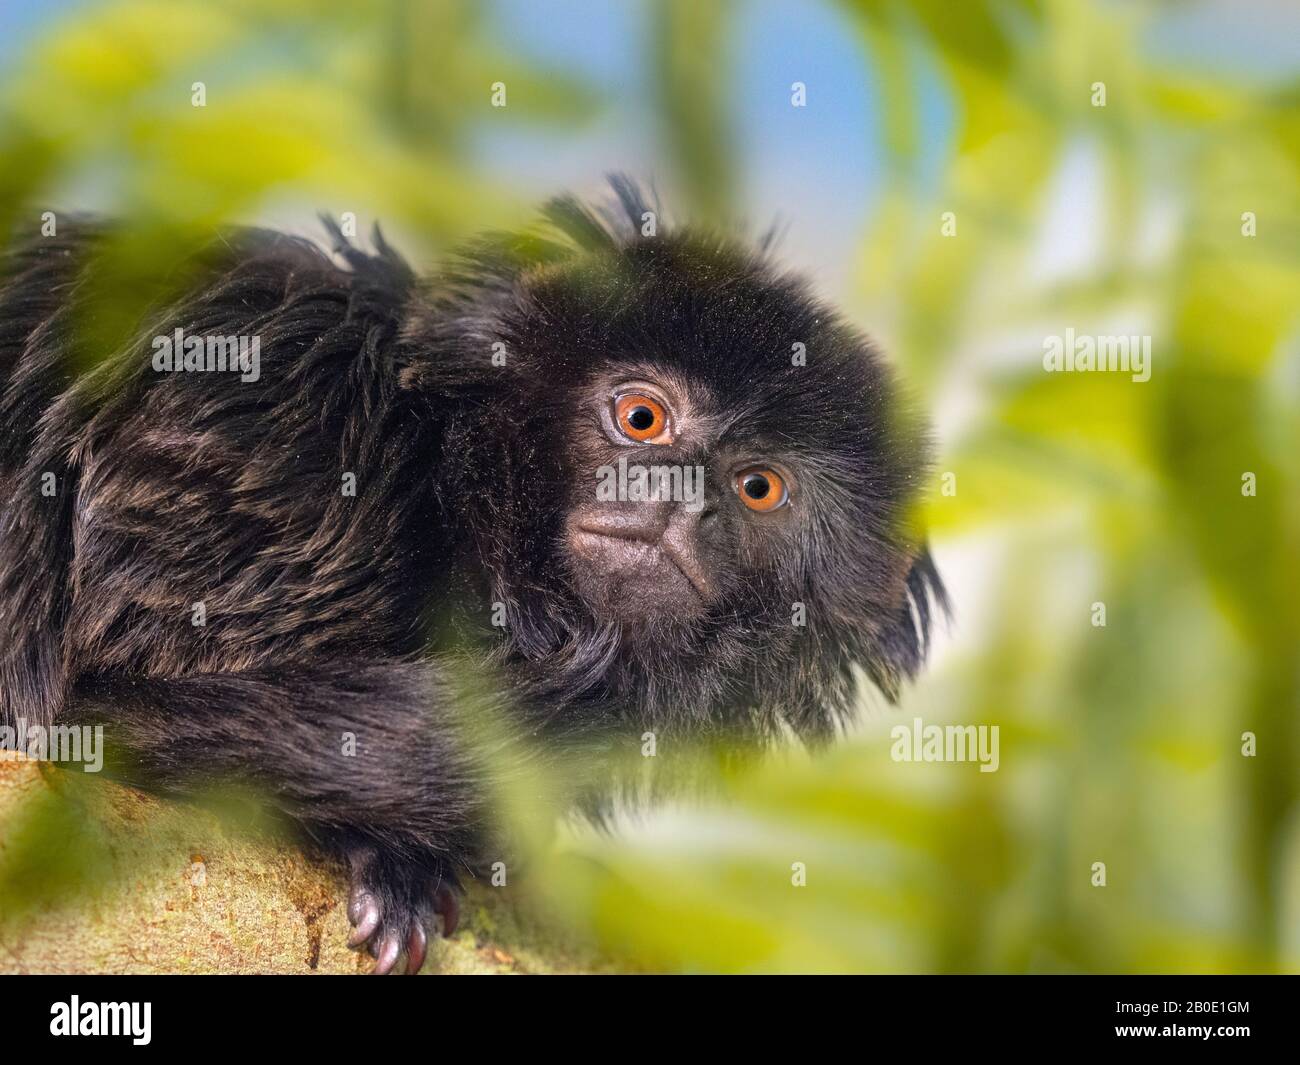 Goeldi's marmoset or Goeldi's monkey Callimico goeldii Stock Photo